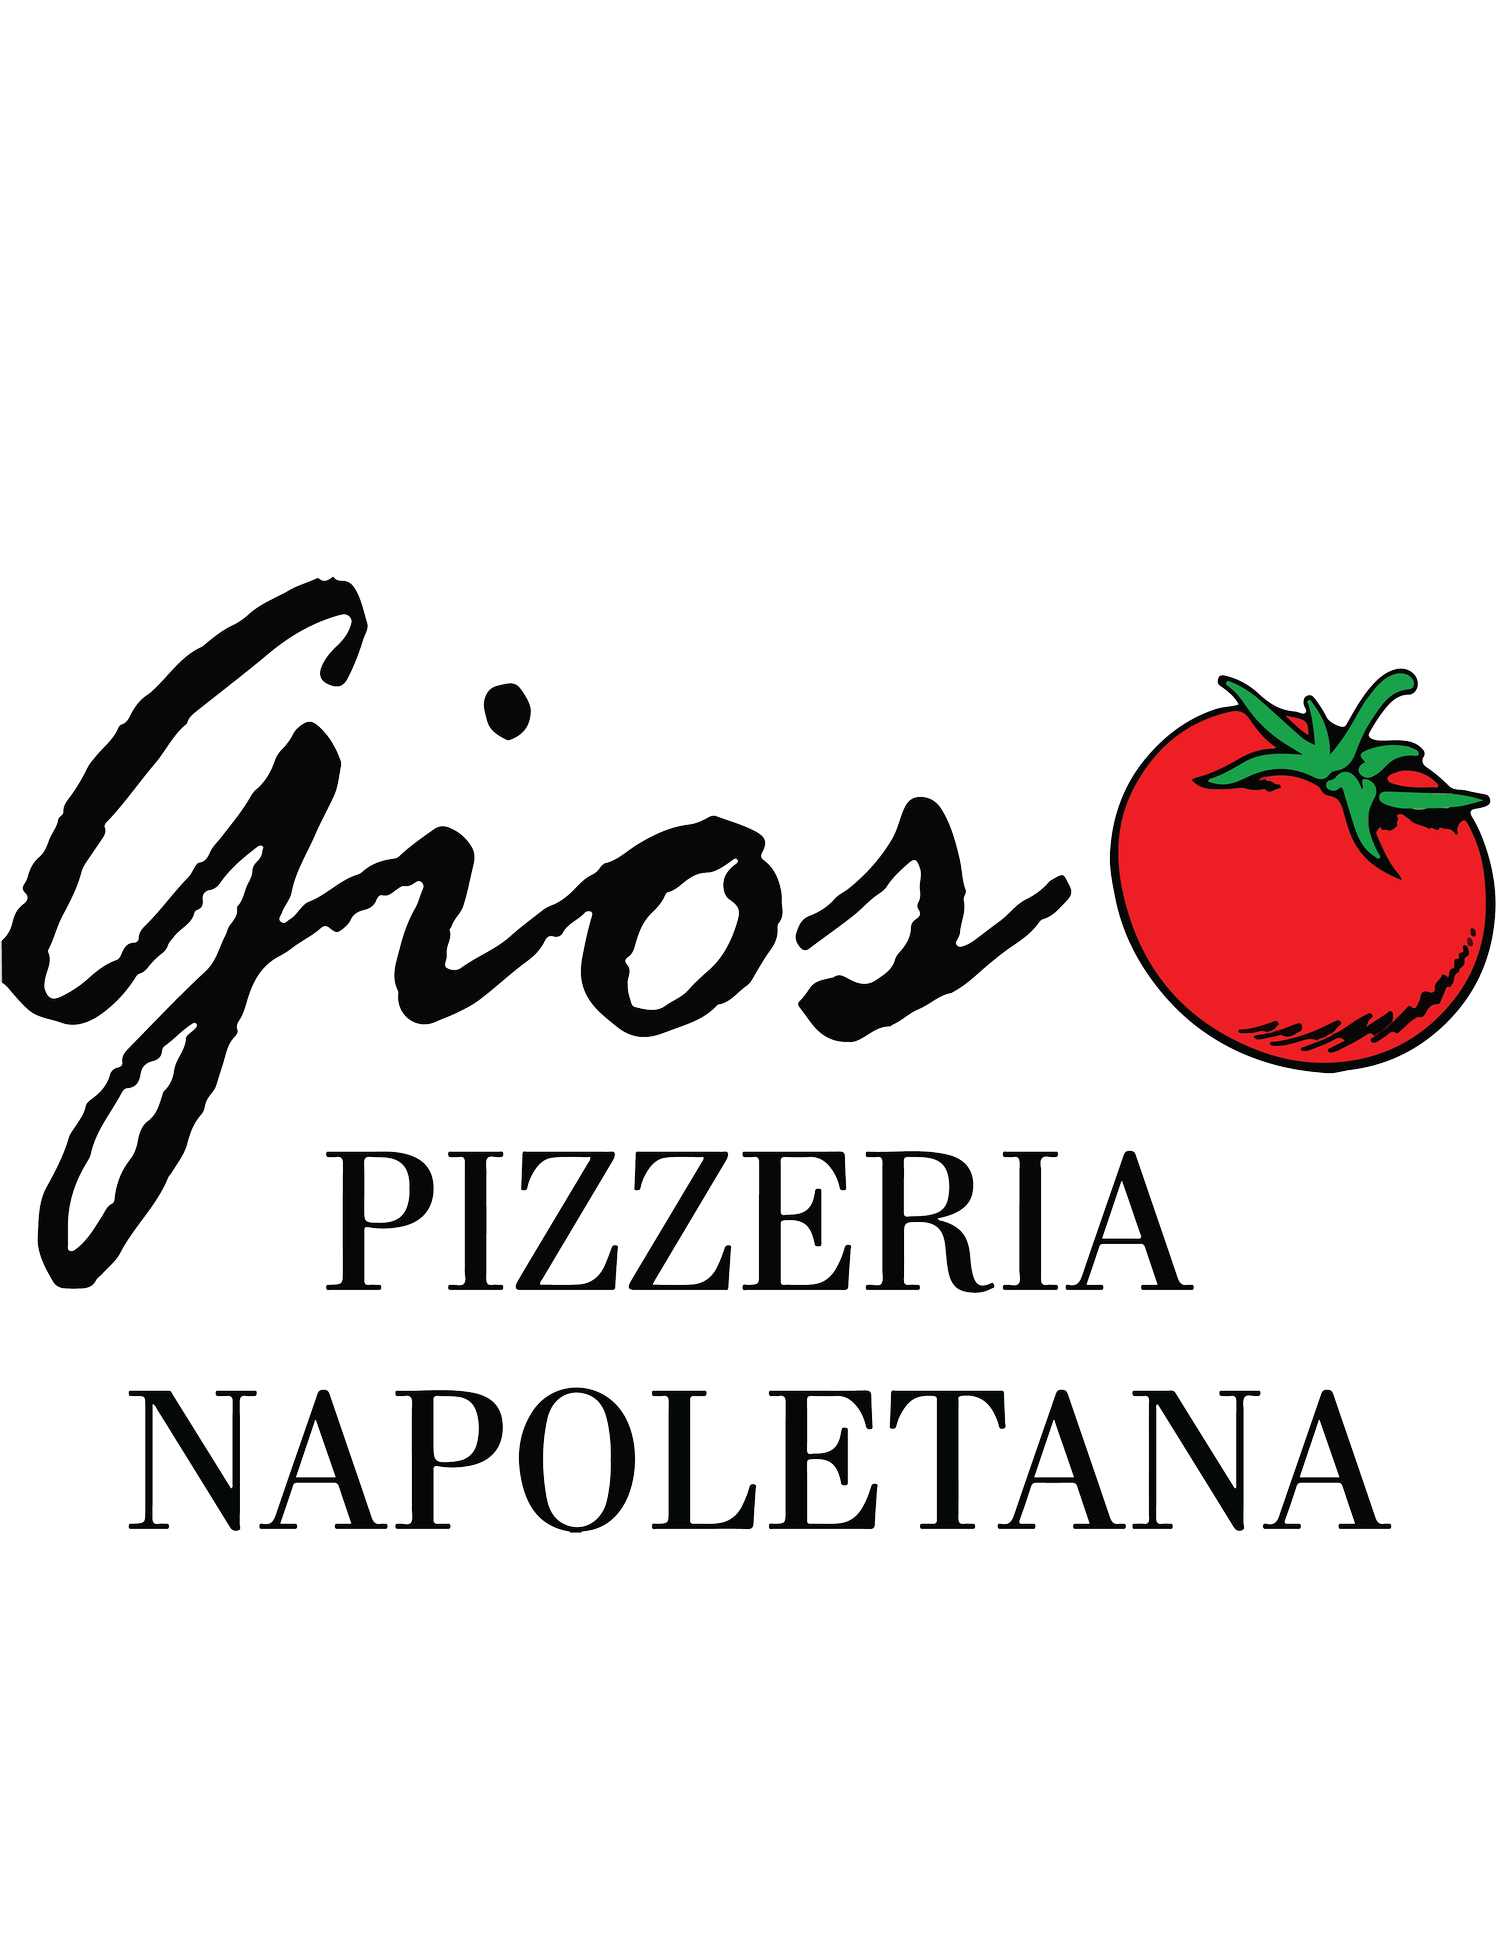 Gios Pizzeria Napoletana